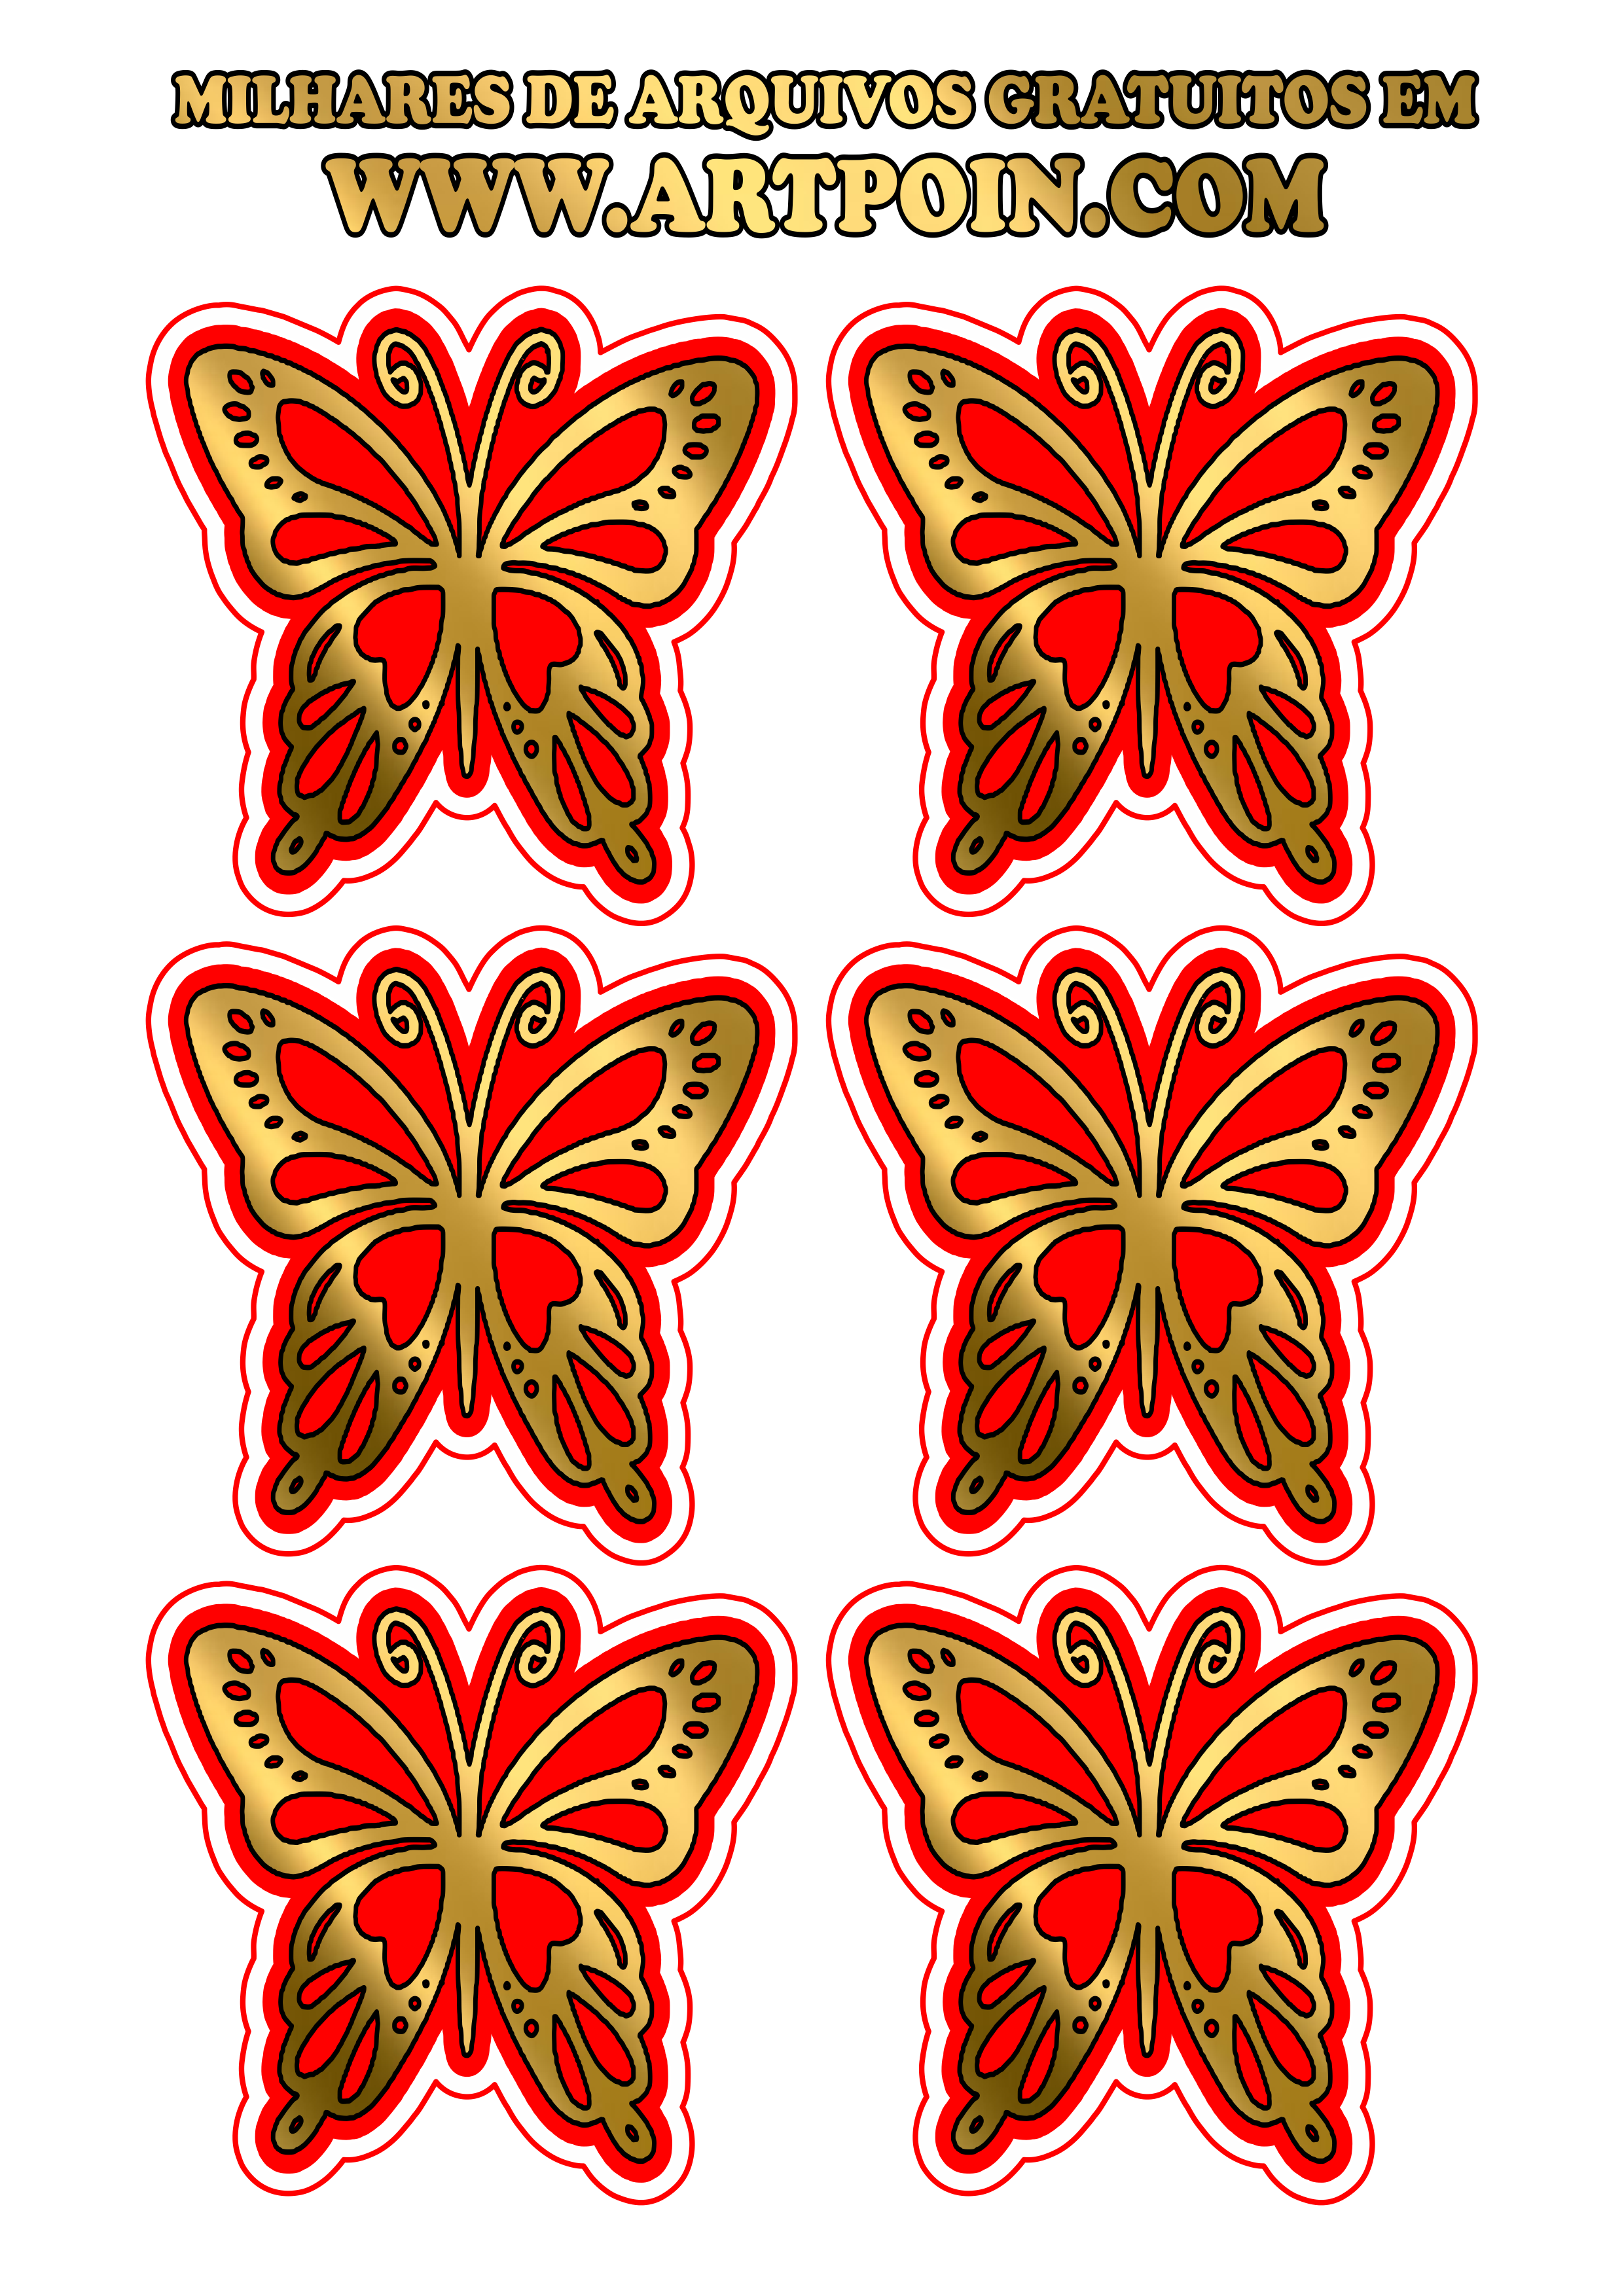 borboleta-dourada-com-vermelho111